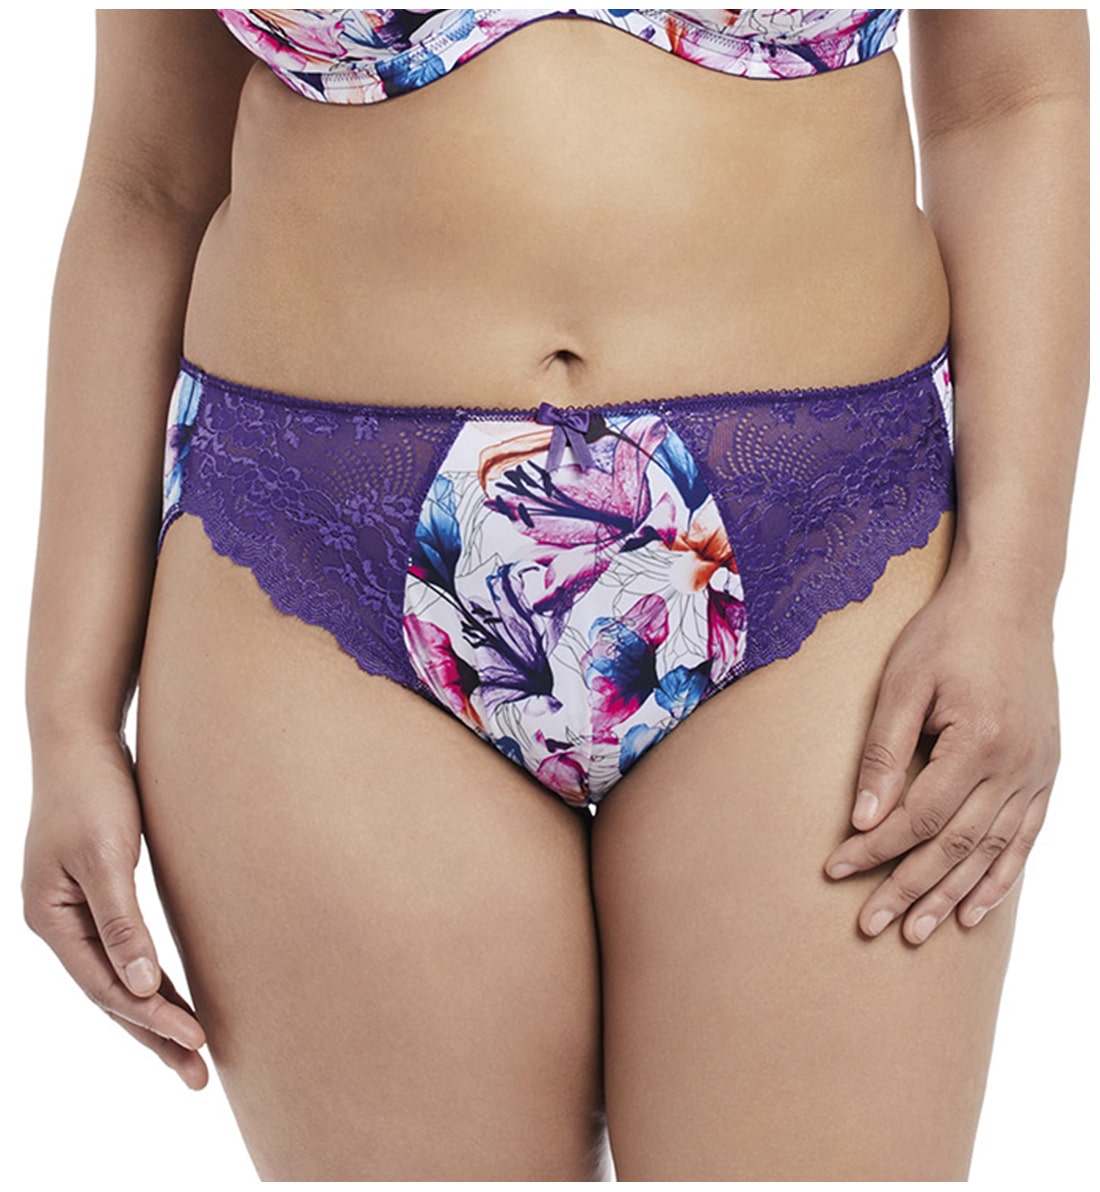 Elomi Morgan Stretch Lace Matching Panty Brief (4115),XXXXL,Purple Lily - Purple Lily,XXXXL